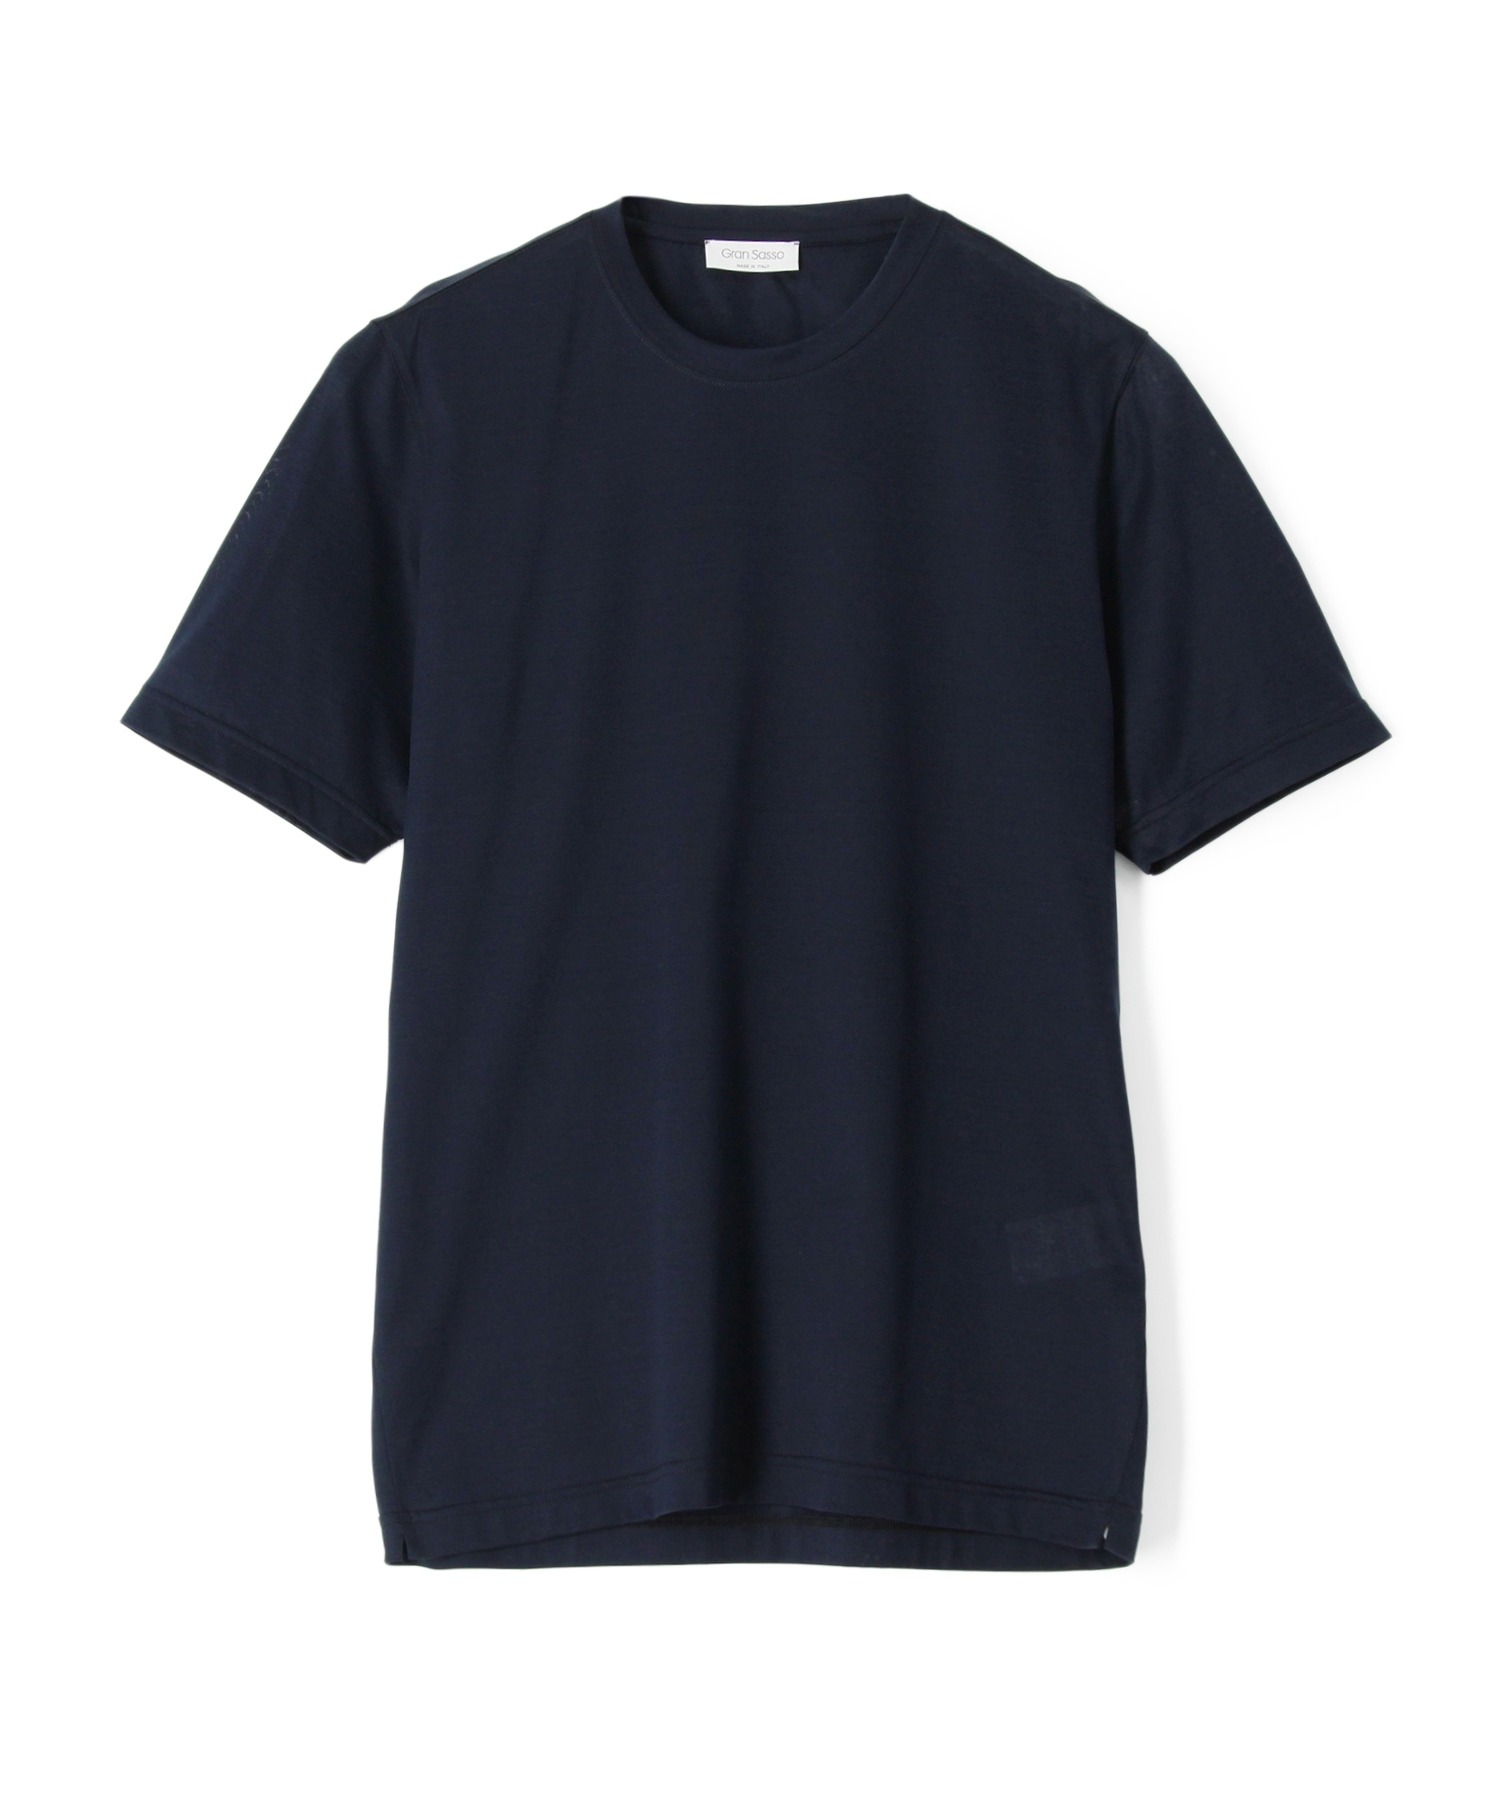 日本製/今治産 tシャツ Tシャツ GRAN SASSO / クルーネックカットソー 